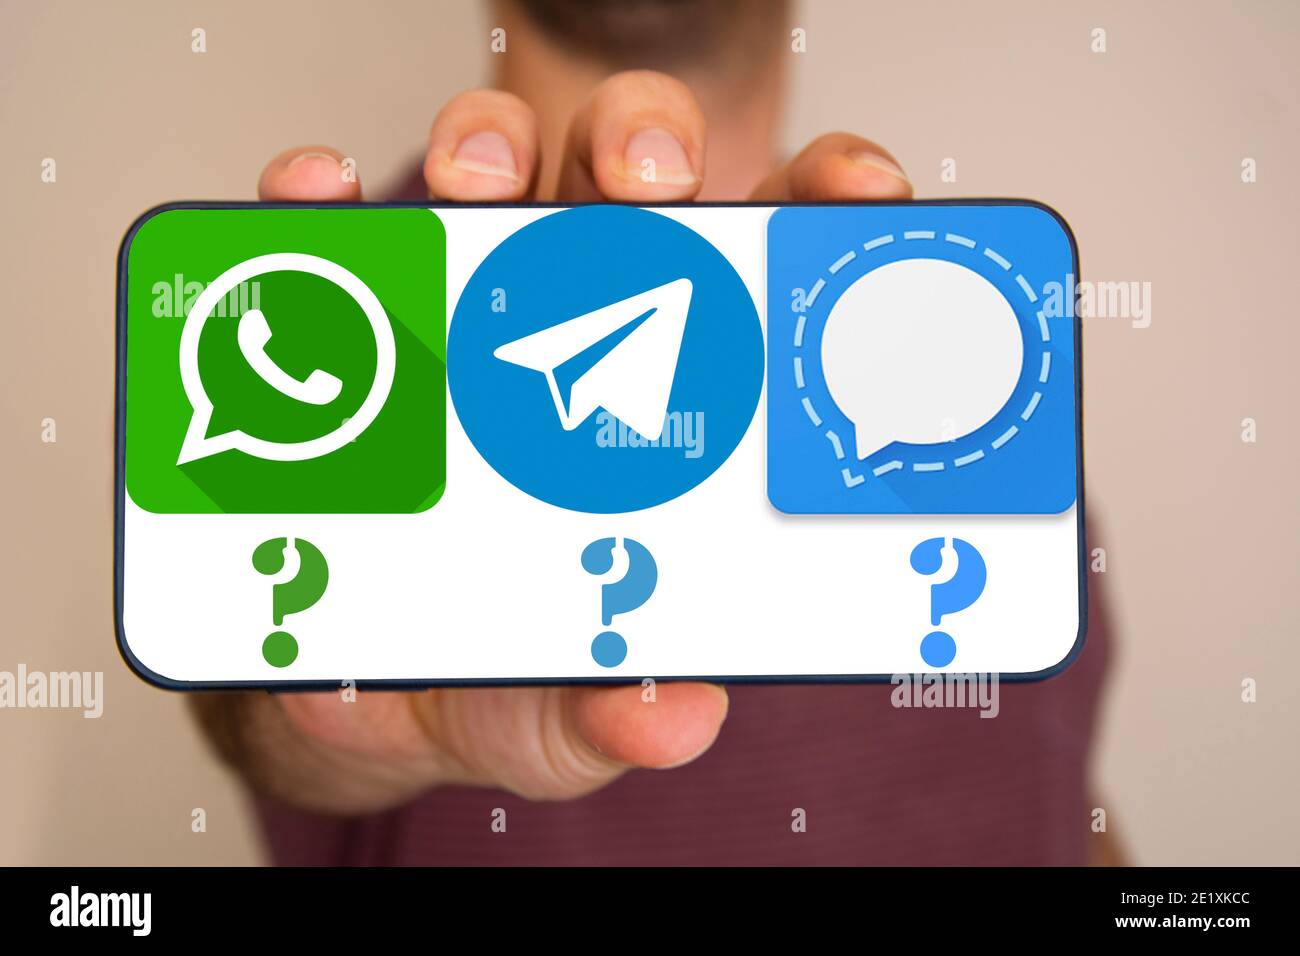 Der nicht erkennbare Mann hält das Telefon mit Whatsapp, Telegram, Signal-Icons auf dem Bildschirm. Stockfoto